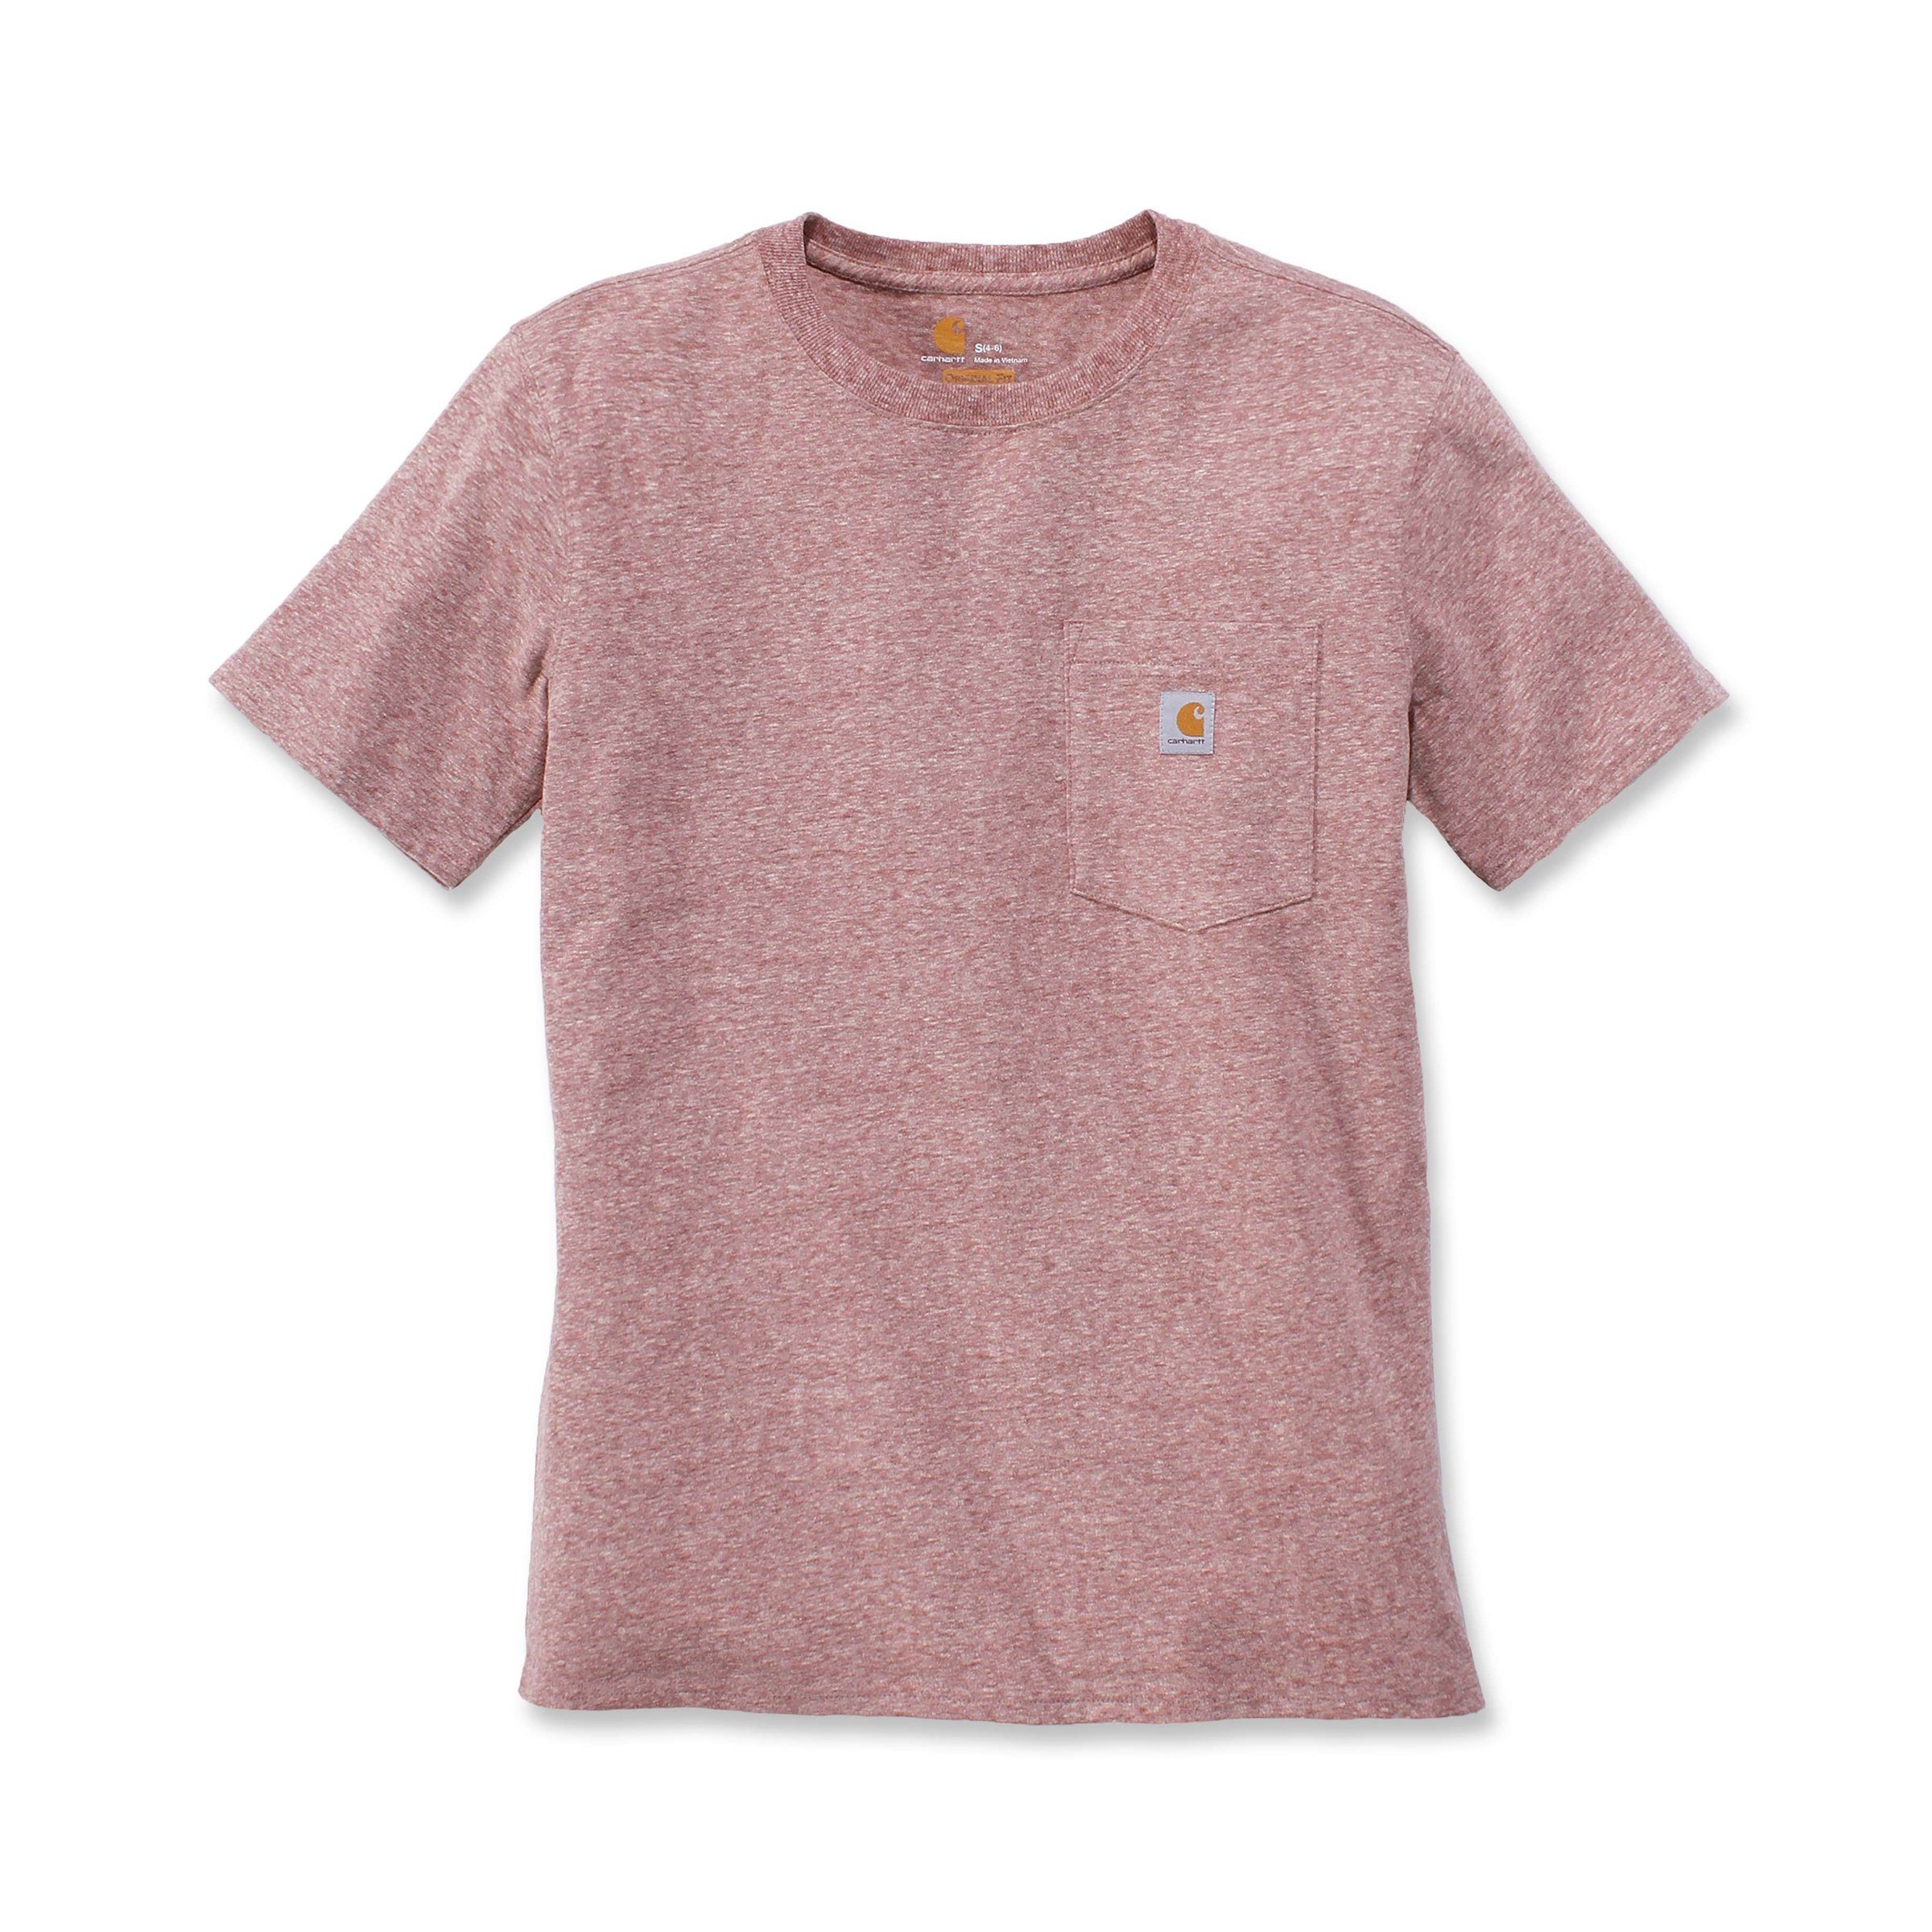 T-Shirt T-Shirt Damen hibiscus Heavyweight heather Carhartt Loose Short-Sleeve Fit Adult Carhartt Pocket